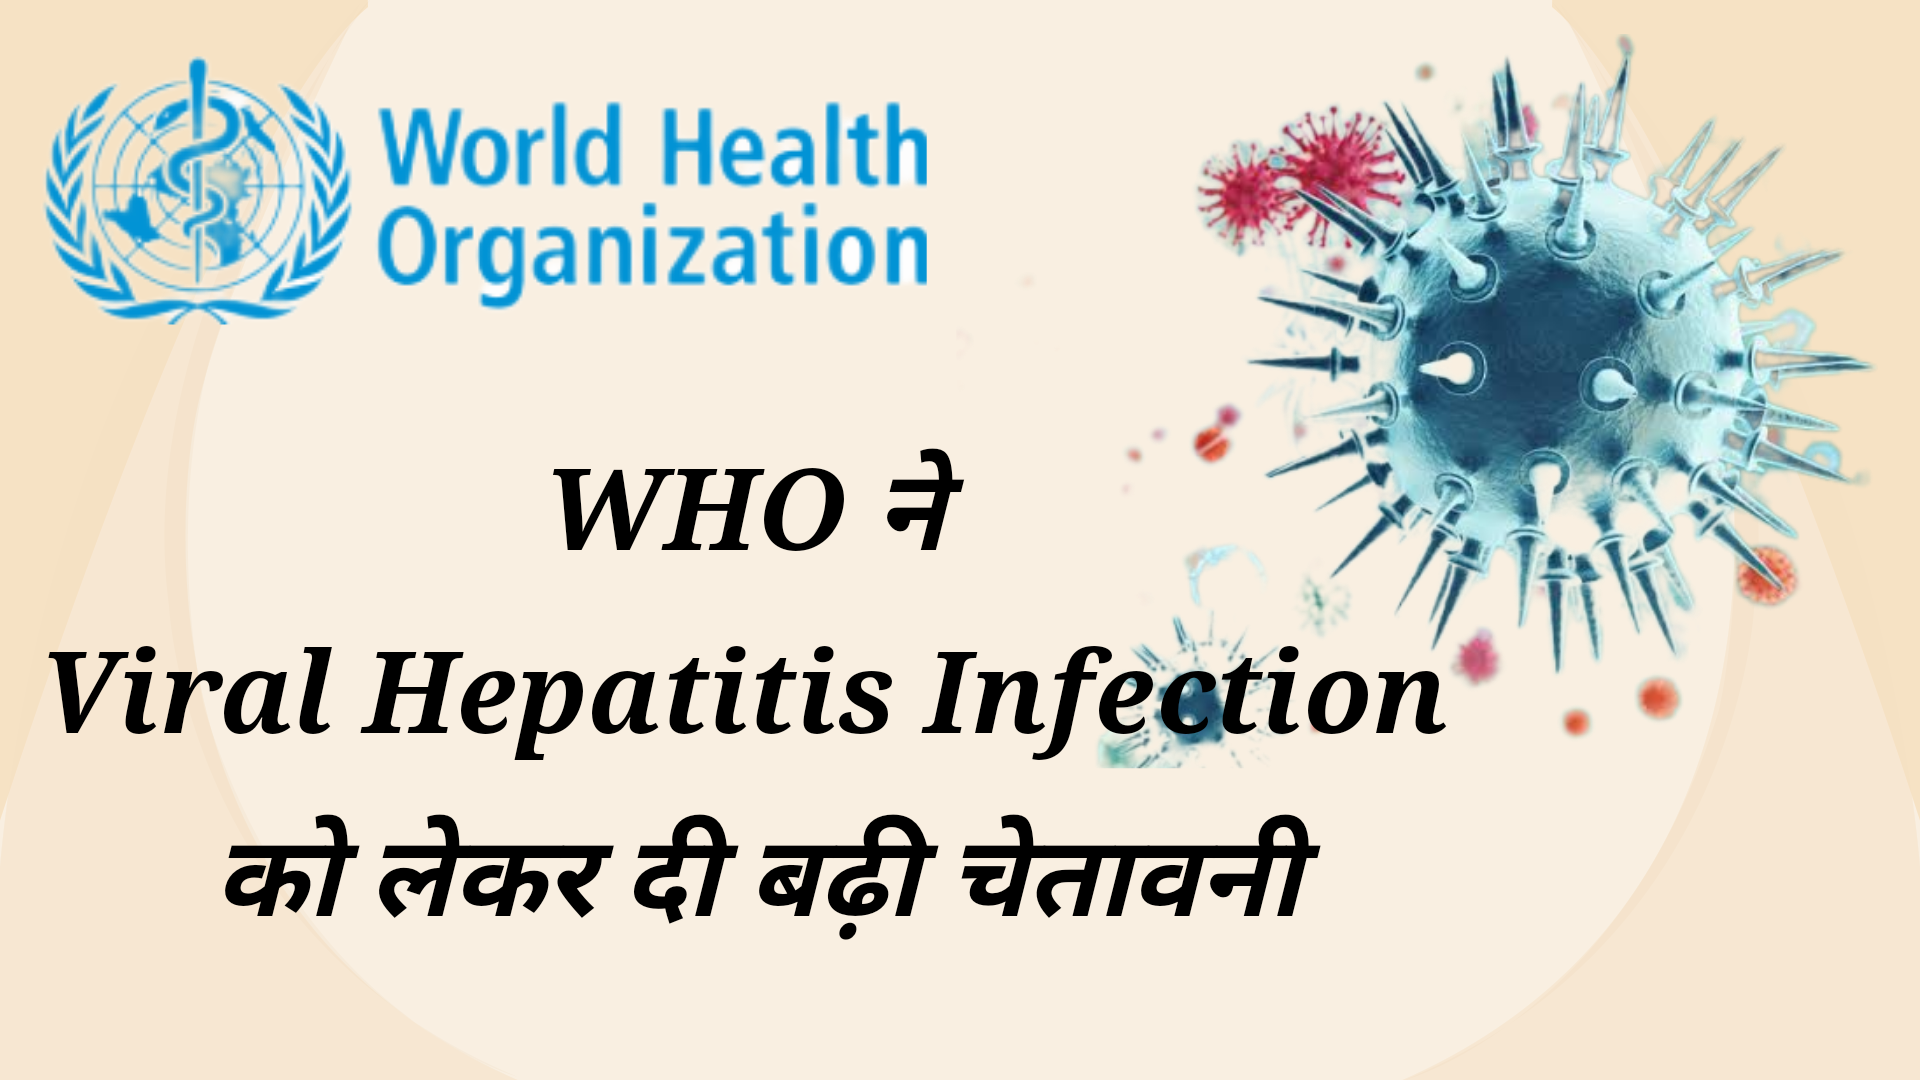 Viral Hepatitis Infection